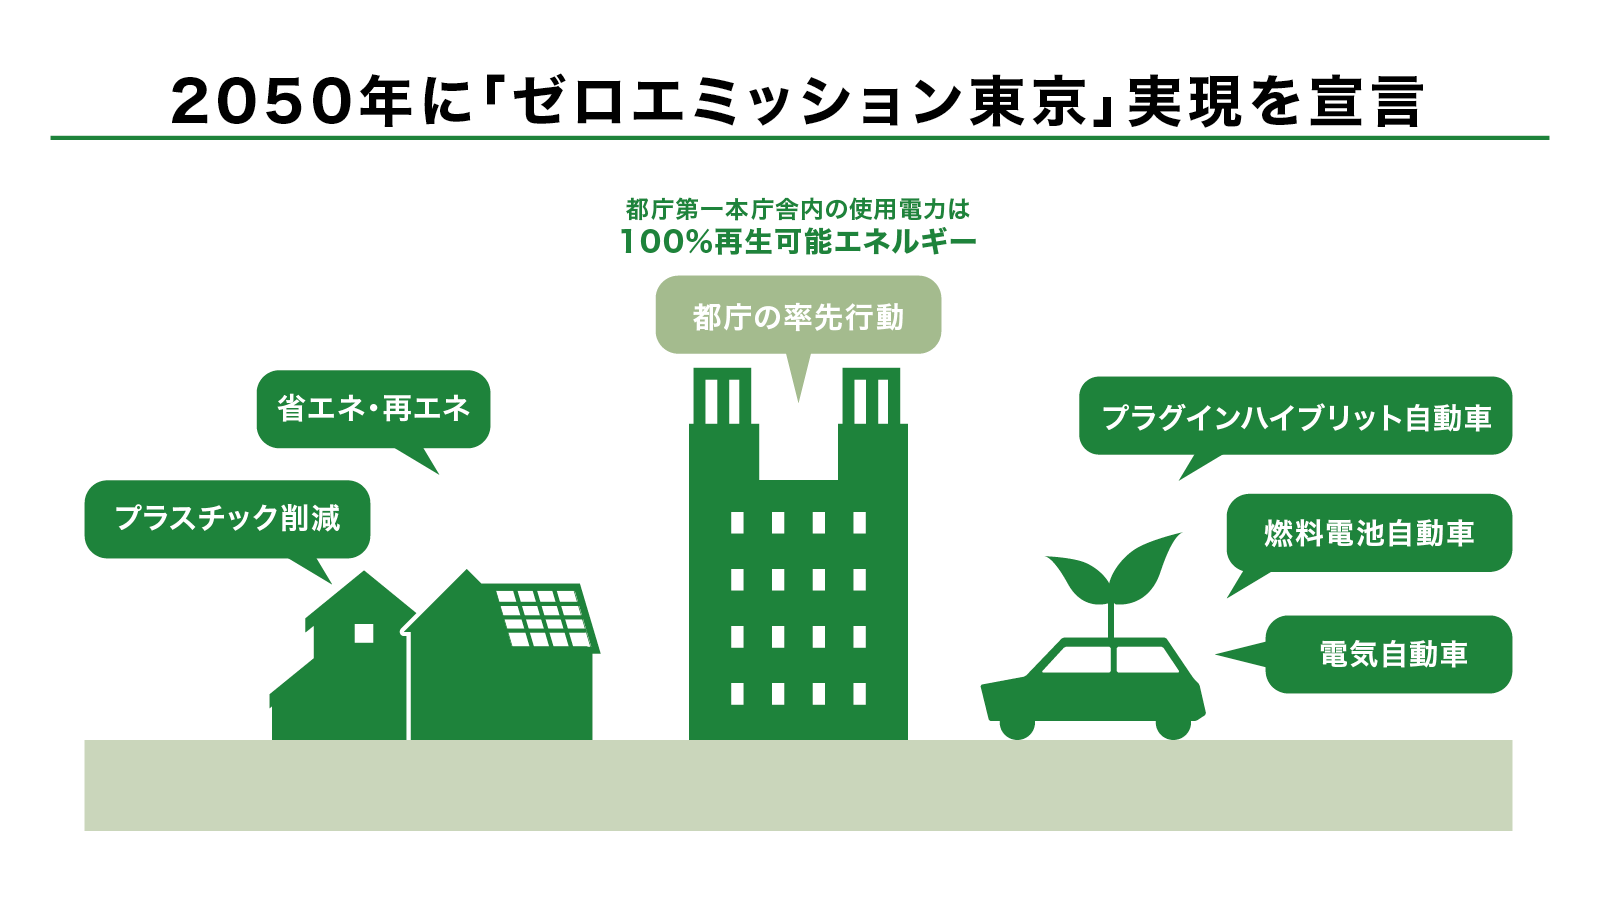 2050年に「ゼロエミッション東京」実現を宣言